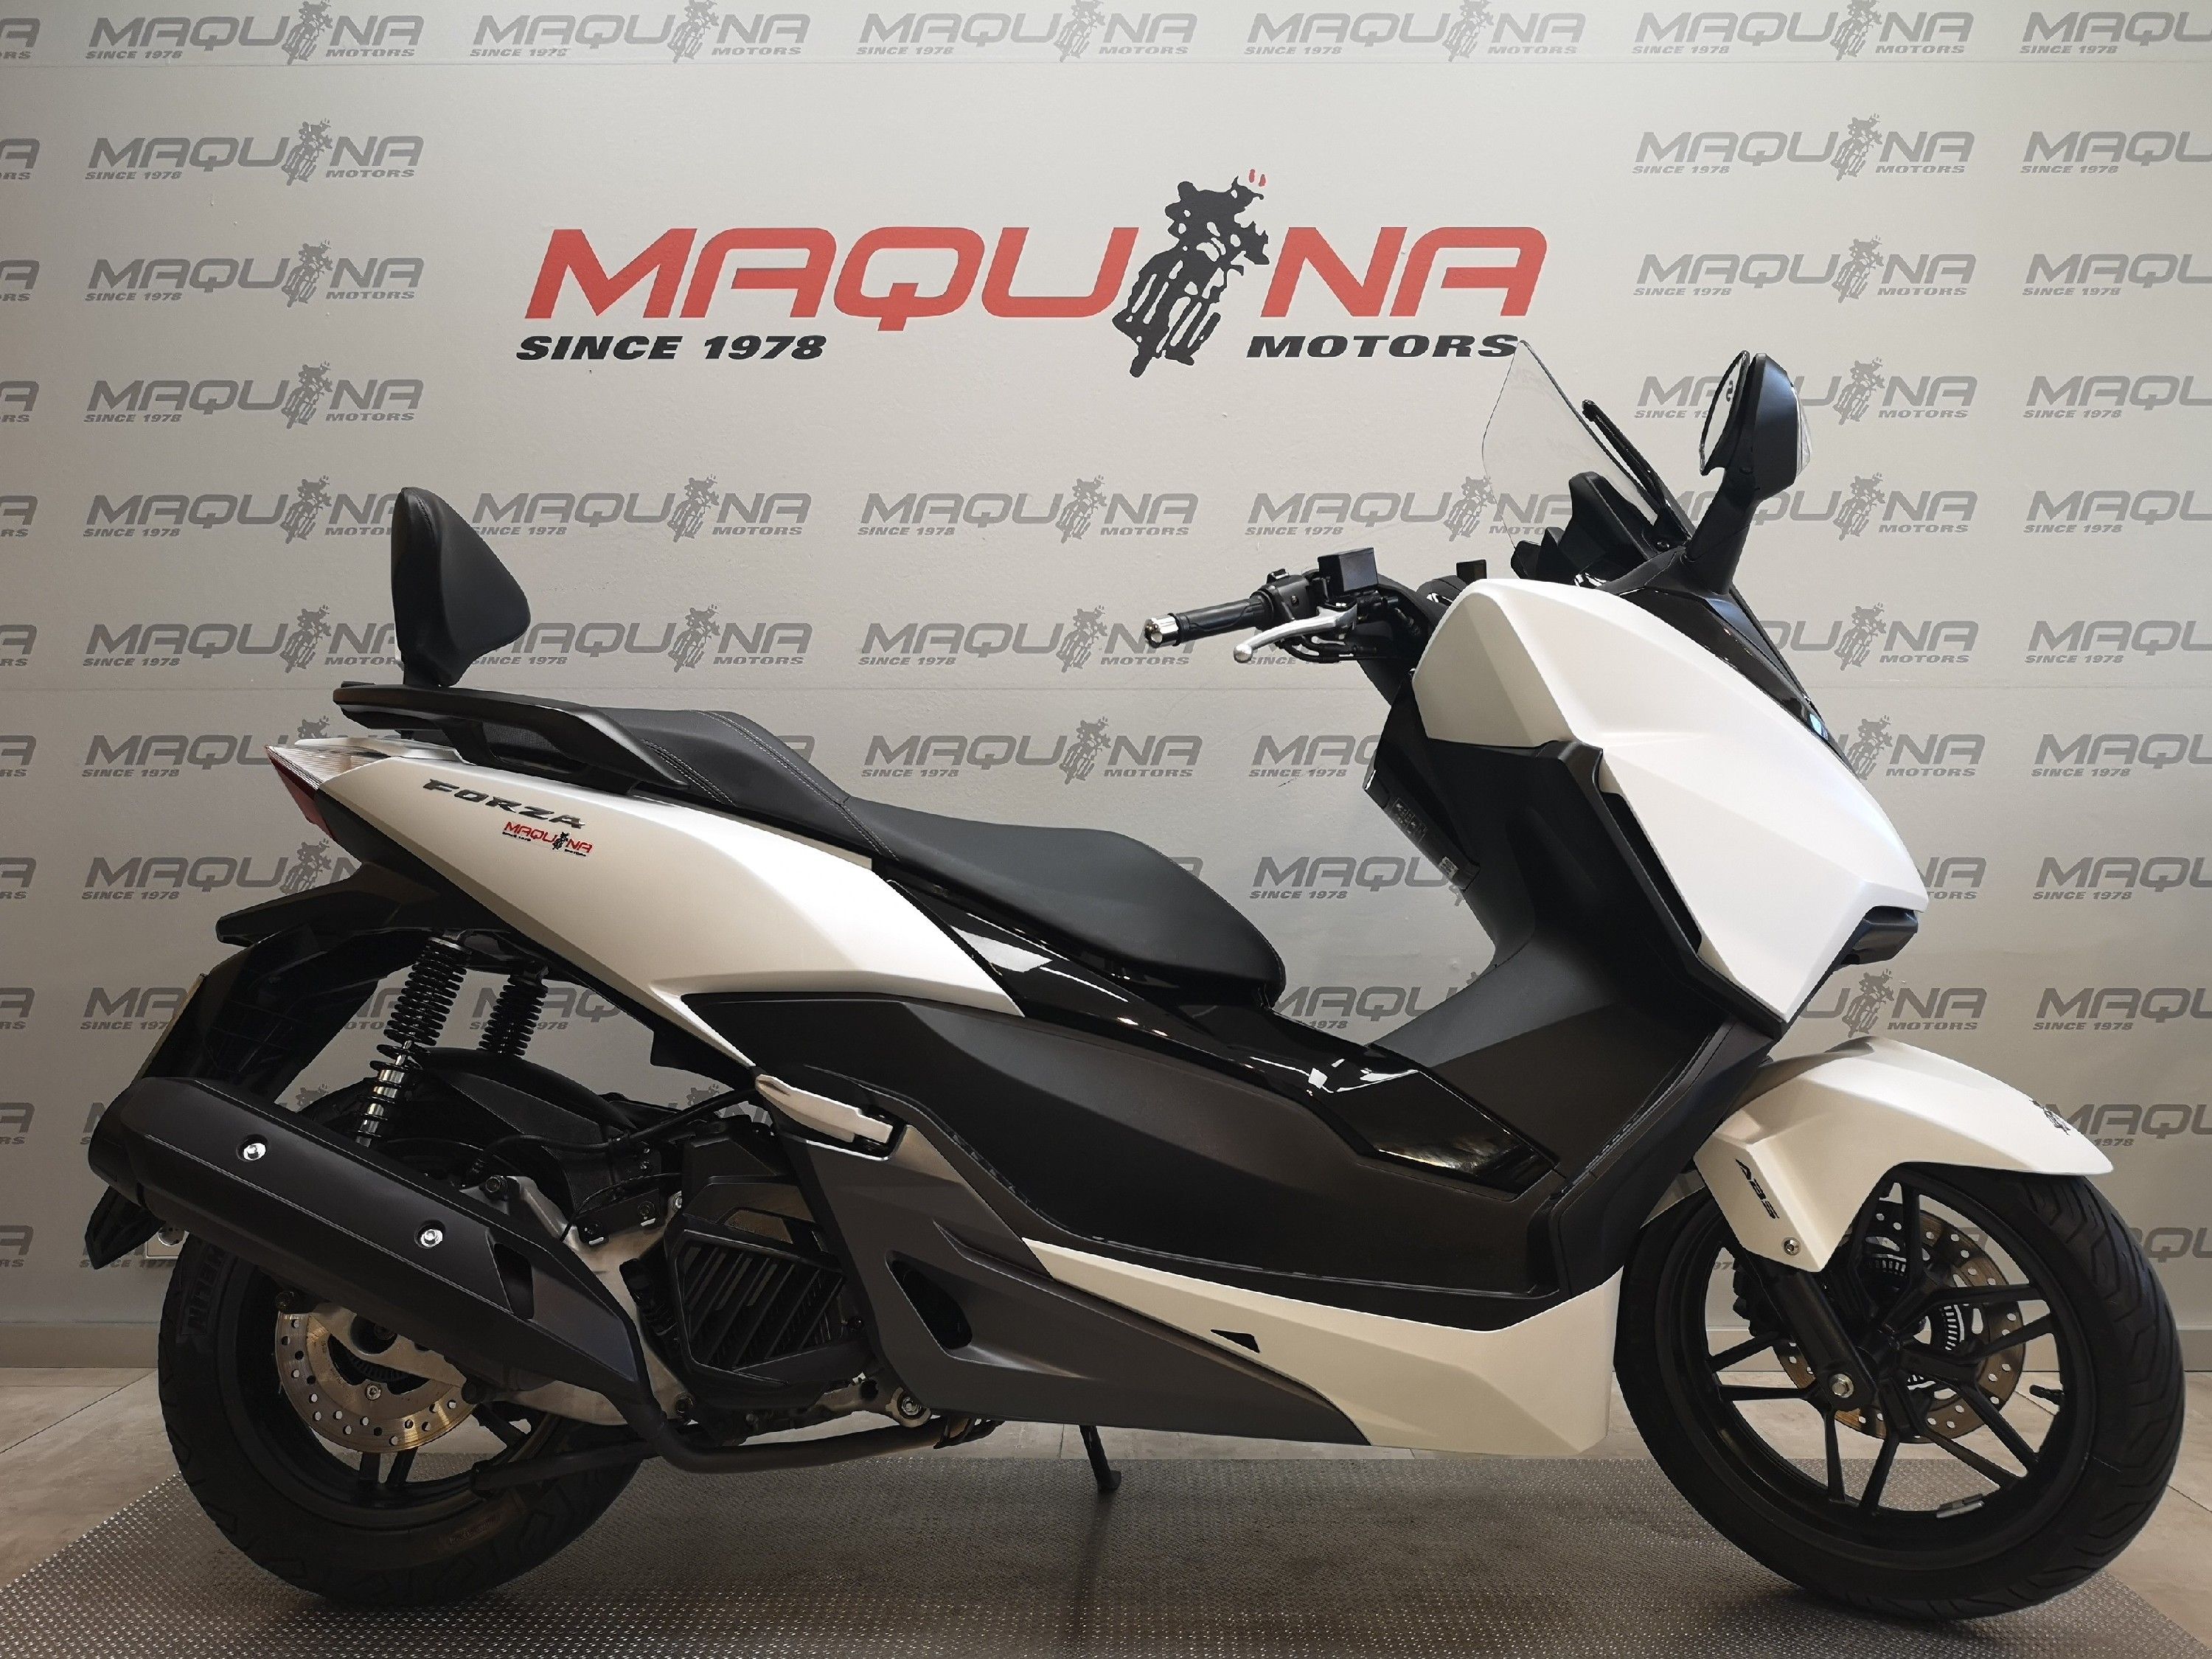 HONDA FORZA 125 – Maquina Motors motos ocasión